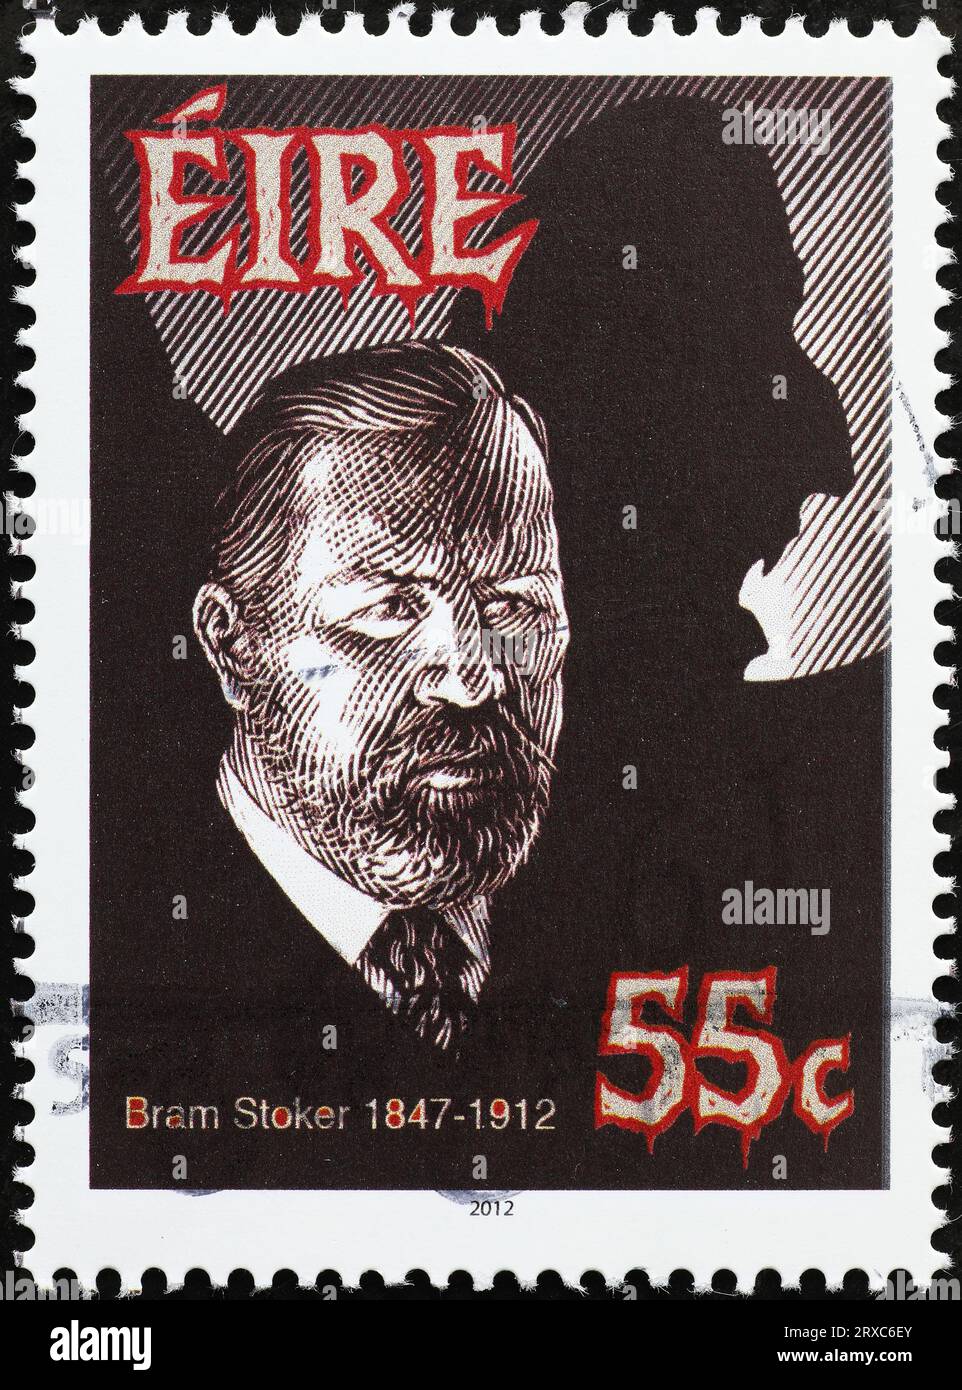 Bram Stoker, crestor of Dracula, on irish stamp Stock Photo